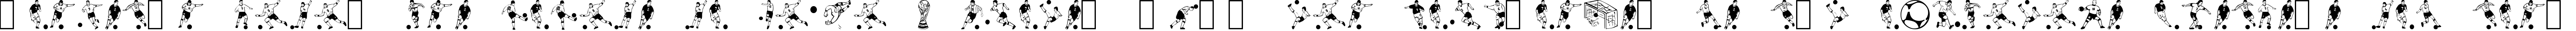 Пример написания шрифтом Soccer Dance текста на испанском